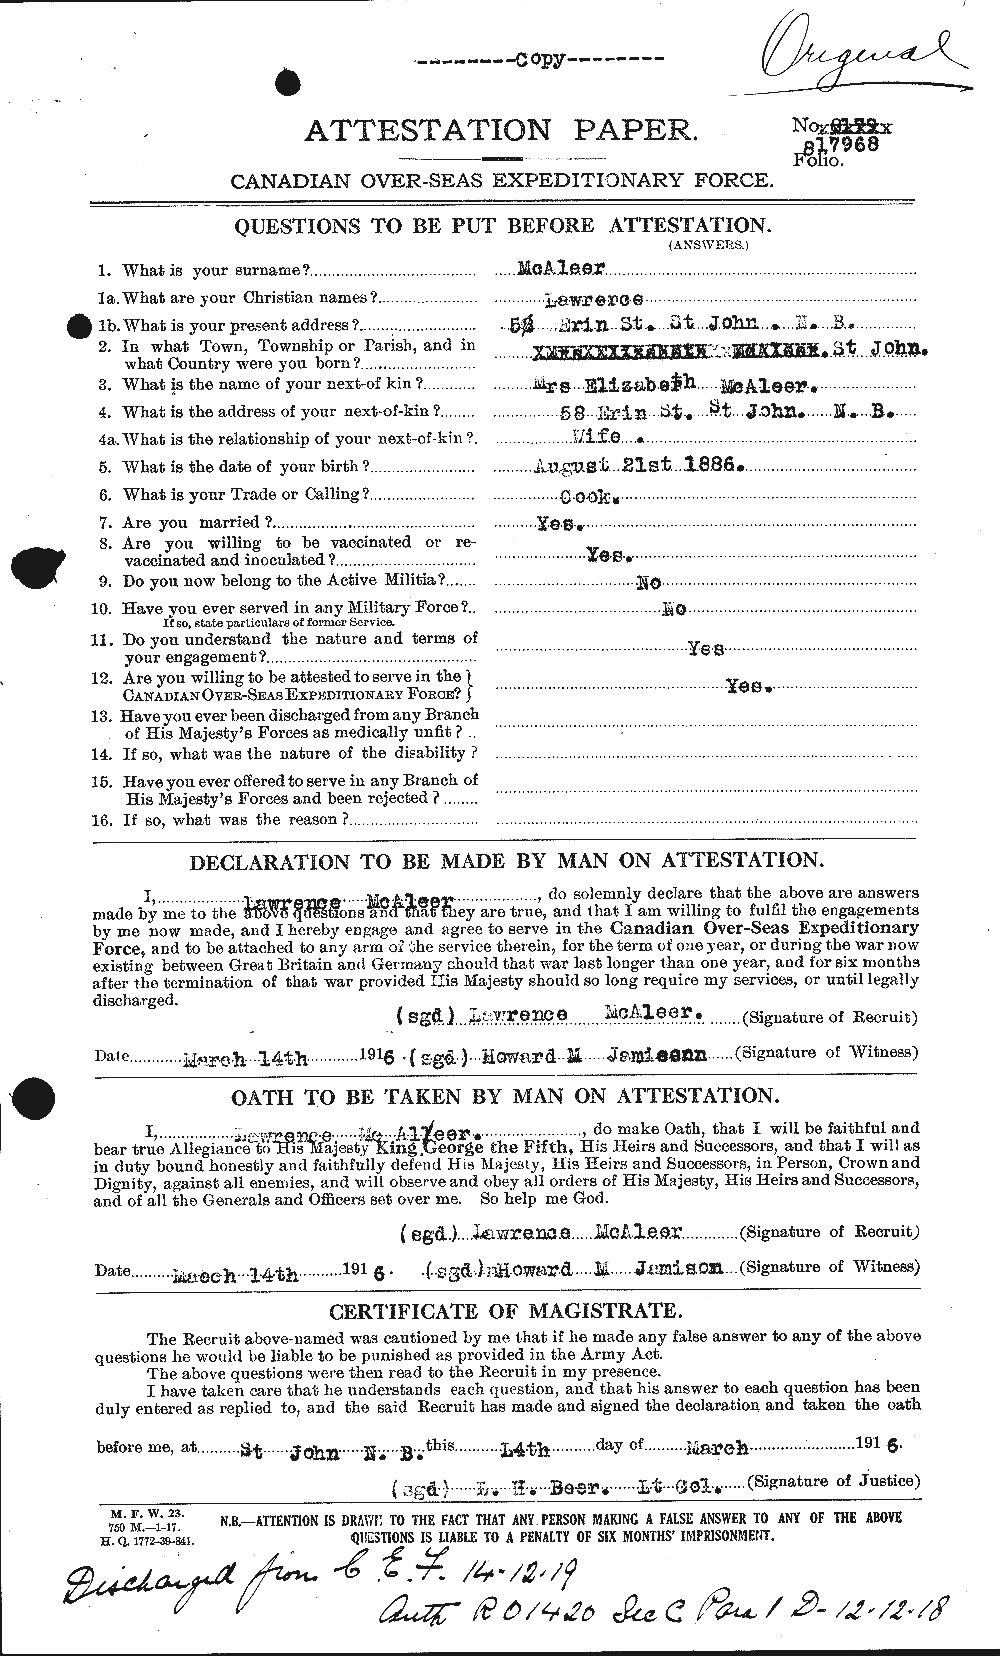 Dossiers du Personnel de la Première Guerre mondiale - CEC 513082a